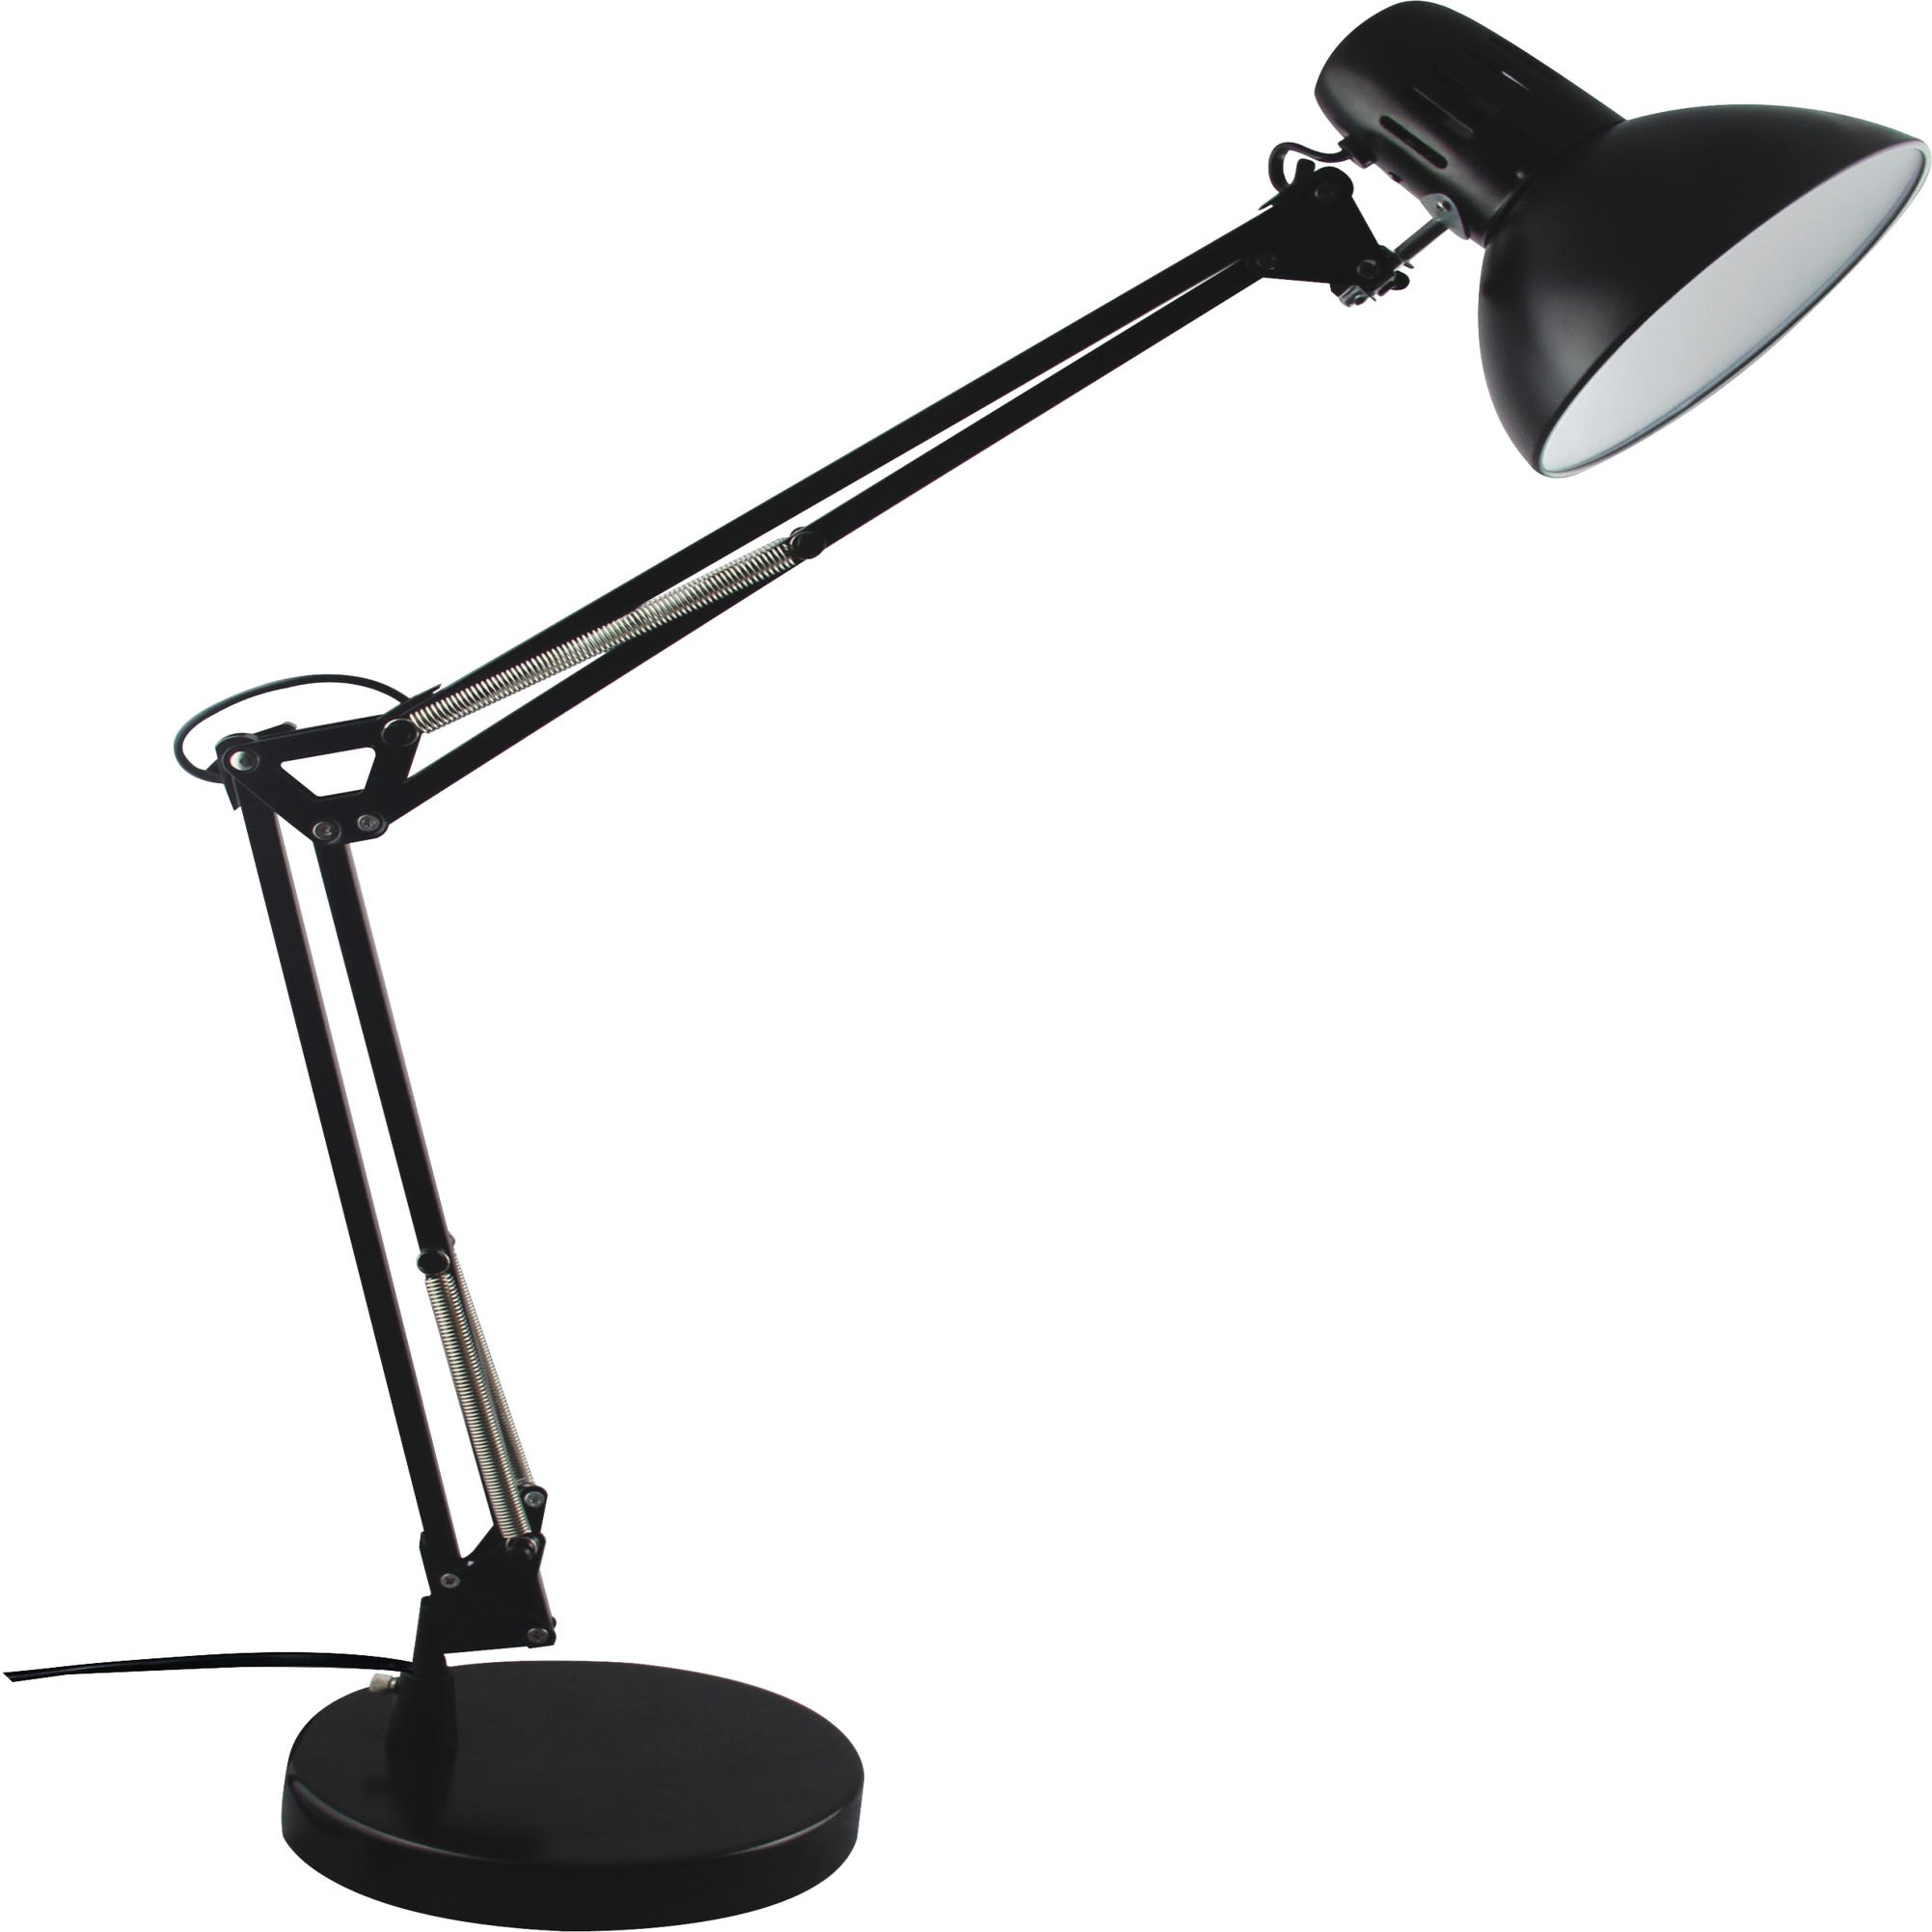 Lampe de bureau design Bank - H. 34 cm - Argent